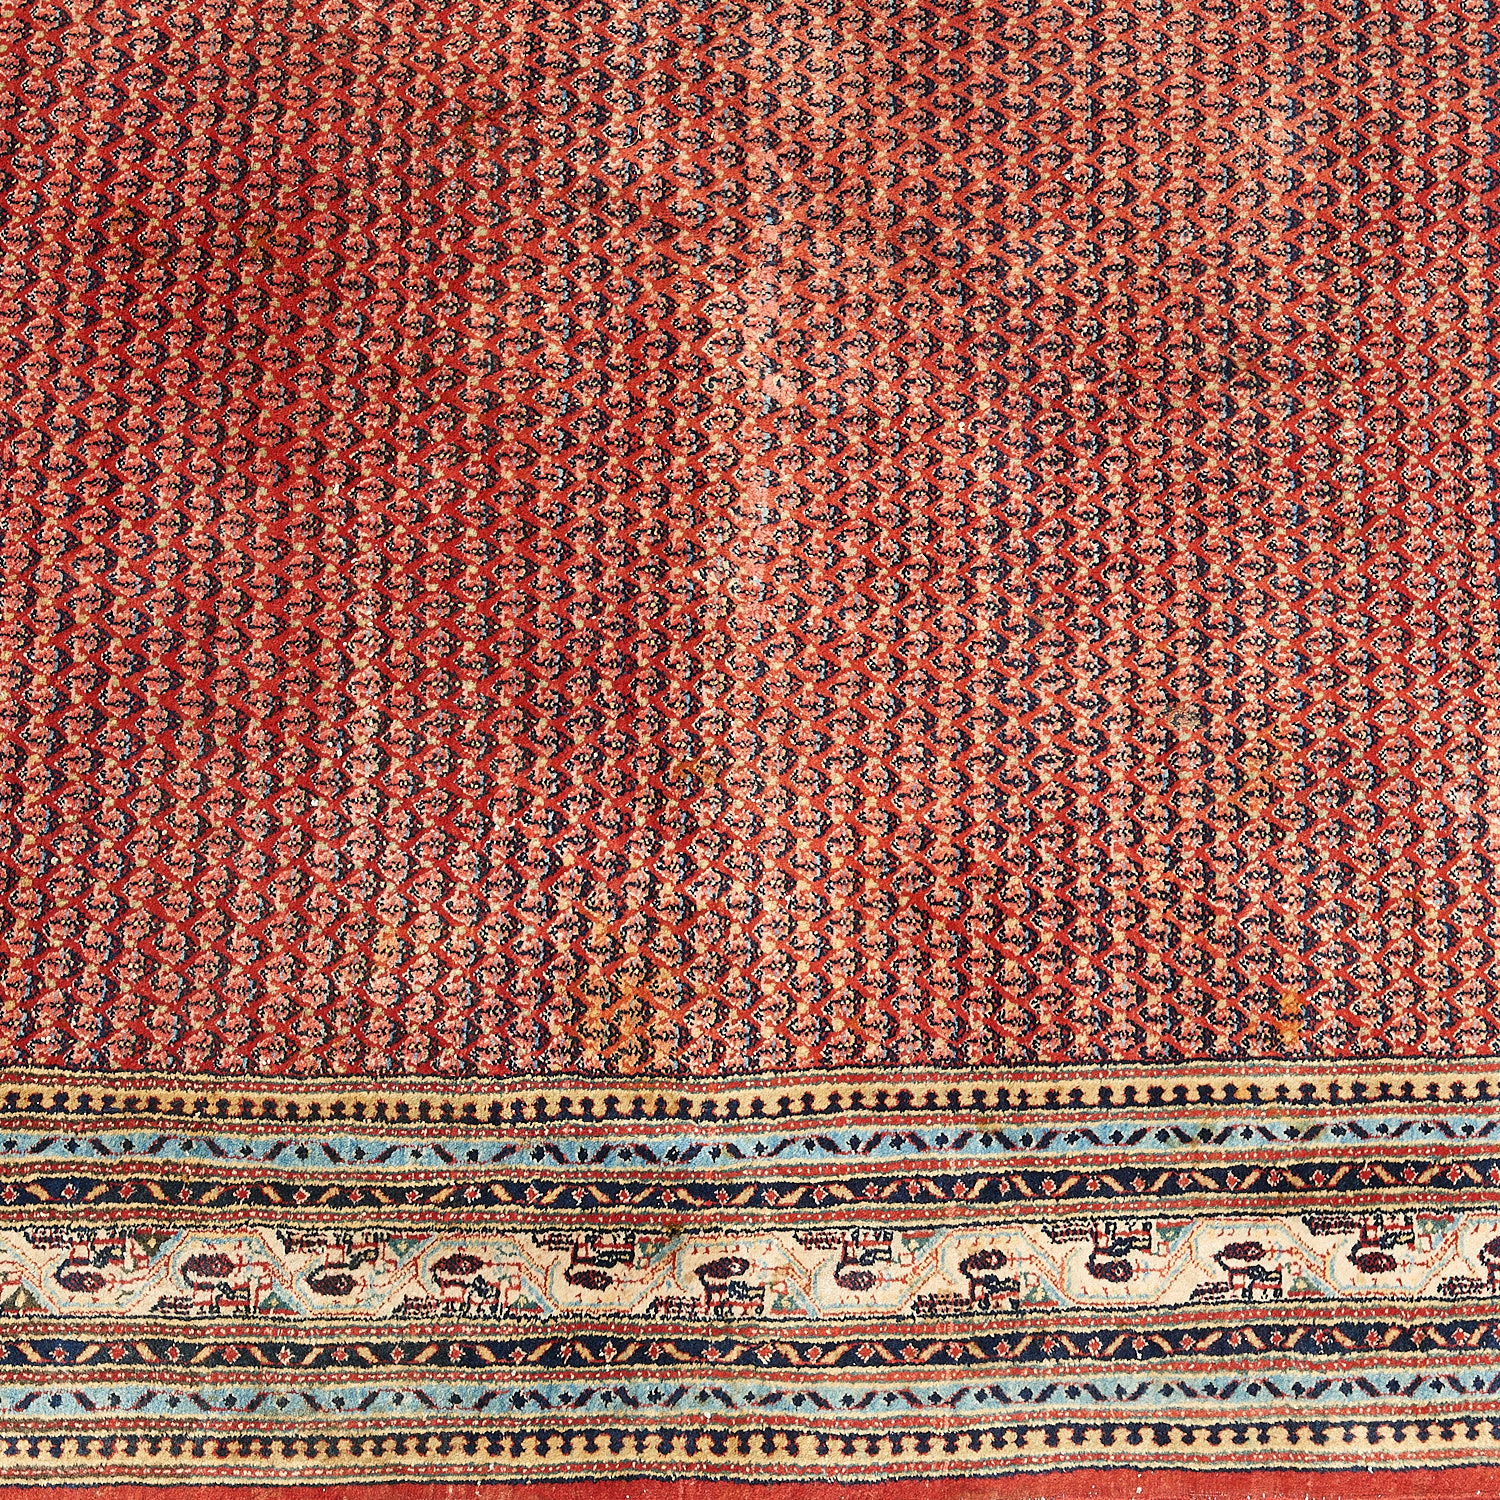 Persian carpet - Image 2 of 7